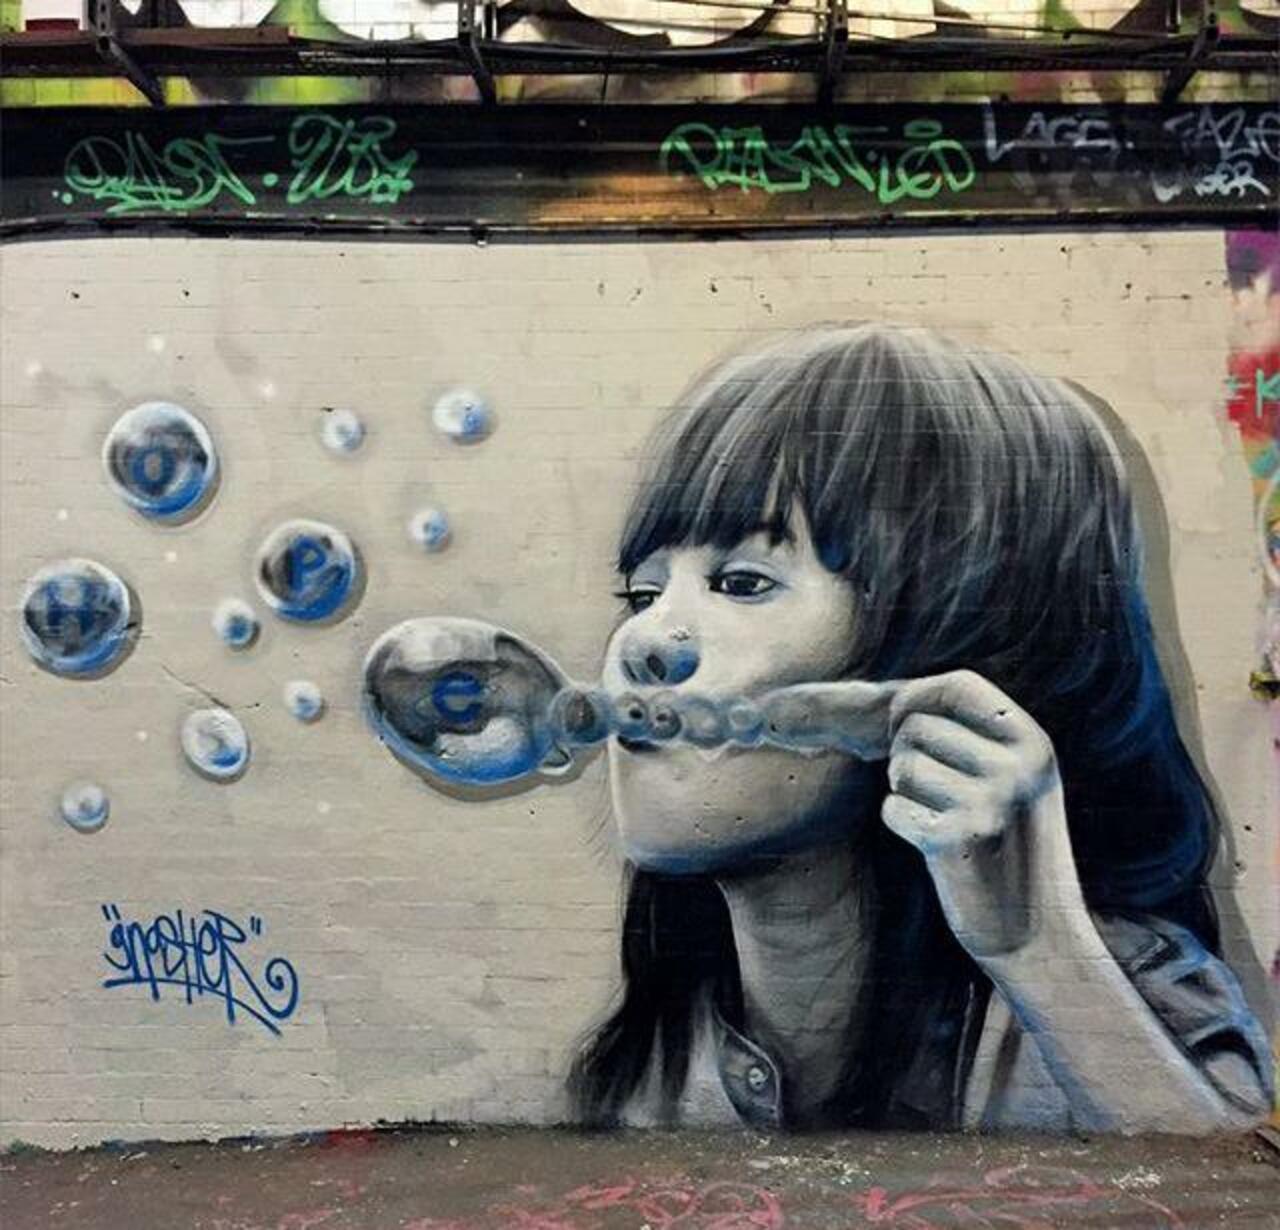 Street Art by Gnasher in London 

#art #arte #graffiti #streetart http://t.co/3OKHbcZhWL